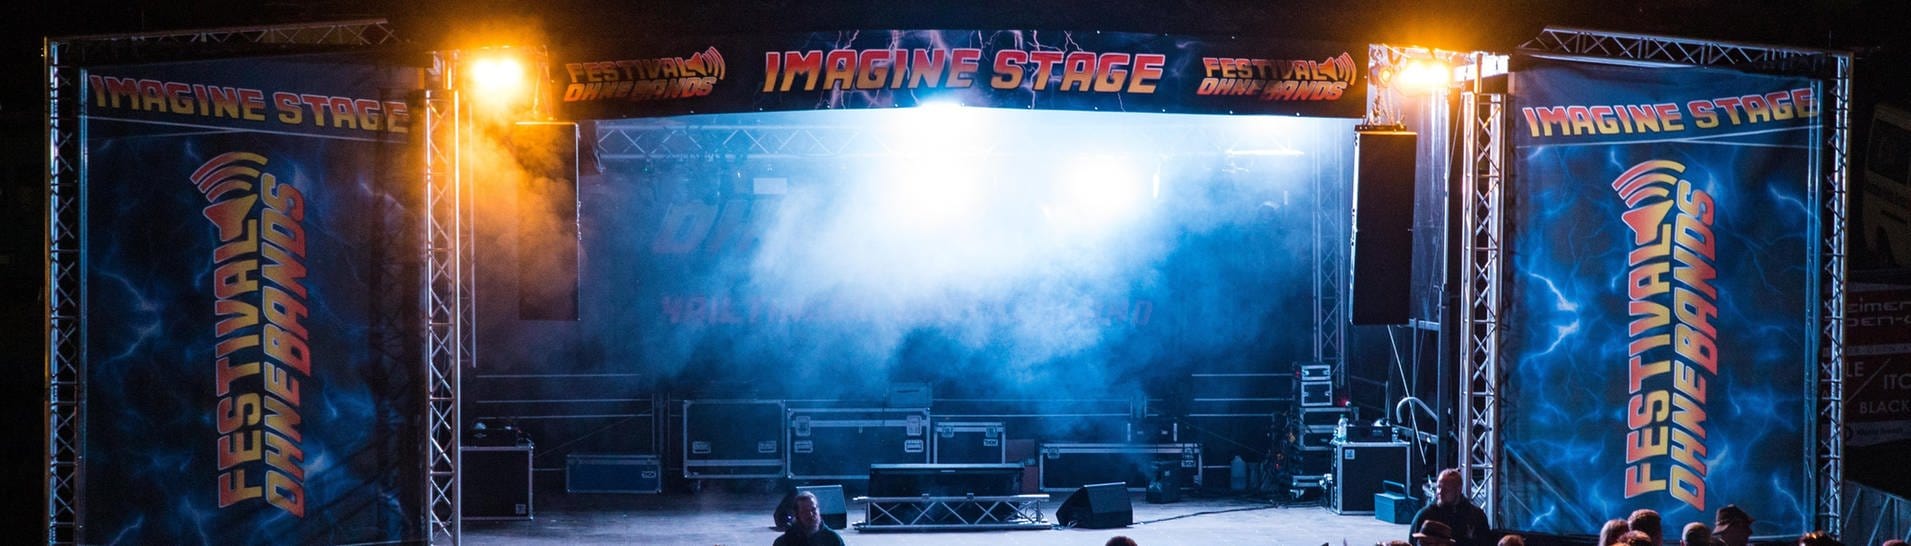 Das undatierte Foto des Veranstalters zeigt die sogenannte Imagine Bühne auf dem "Festival ohne Bands" in Dürmentingen-Hailtingen.